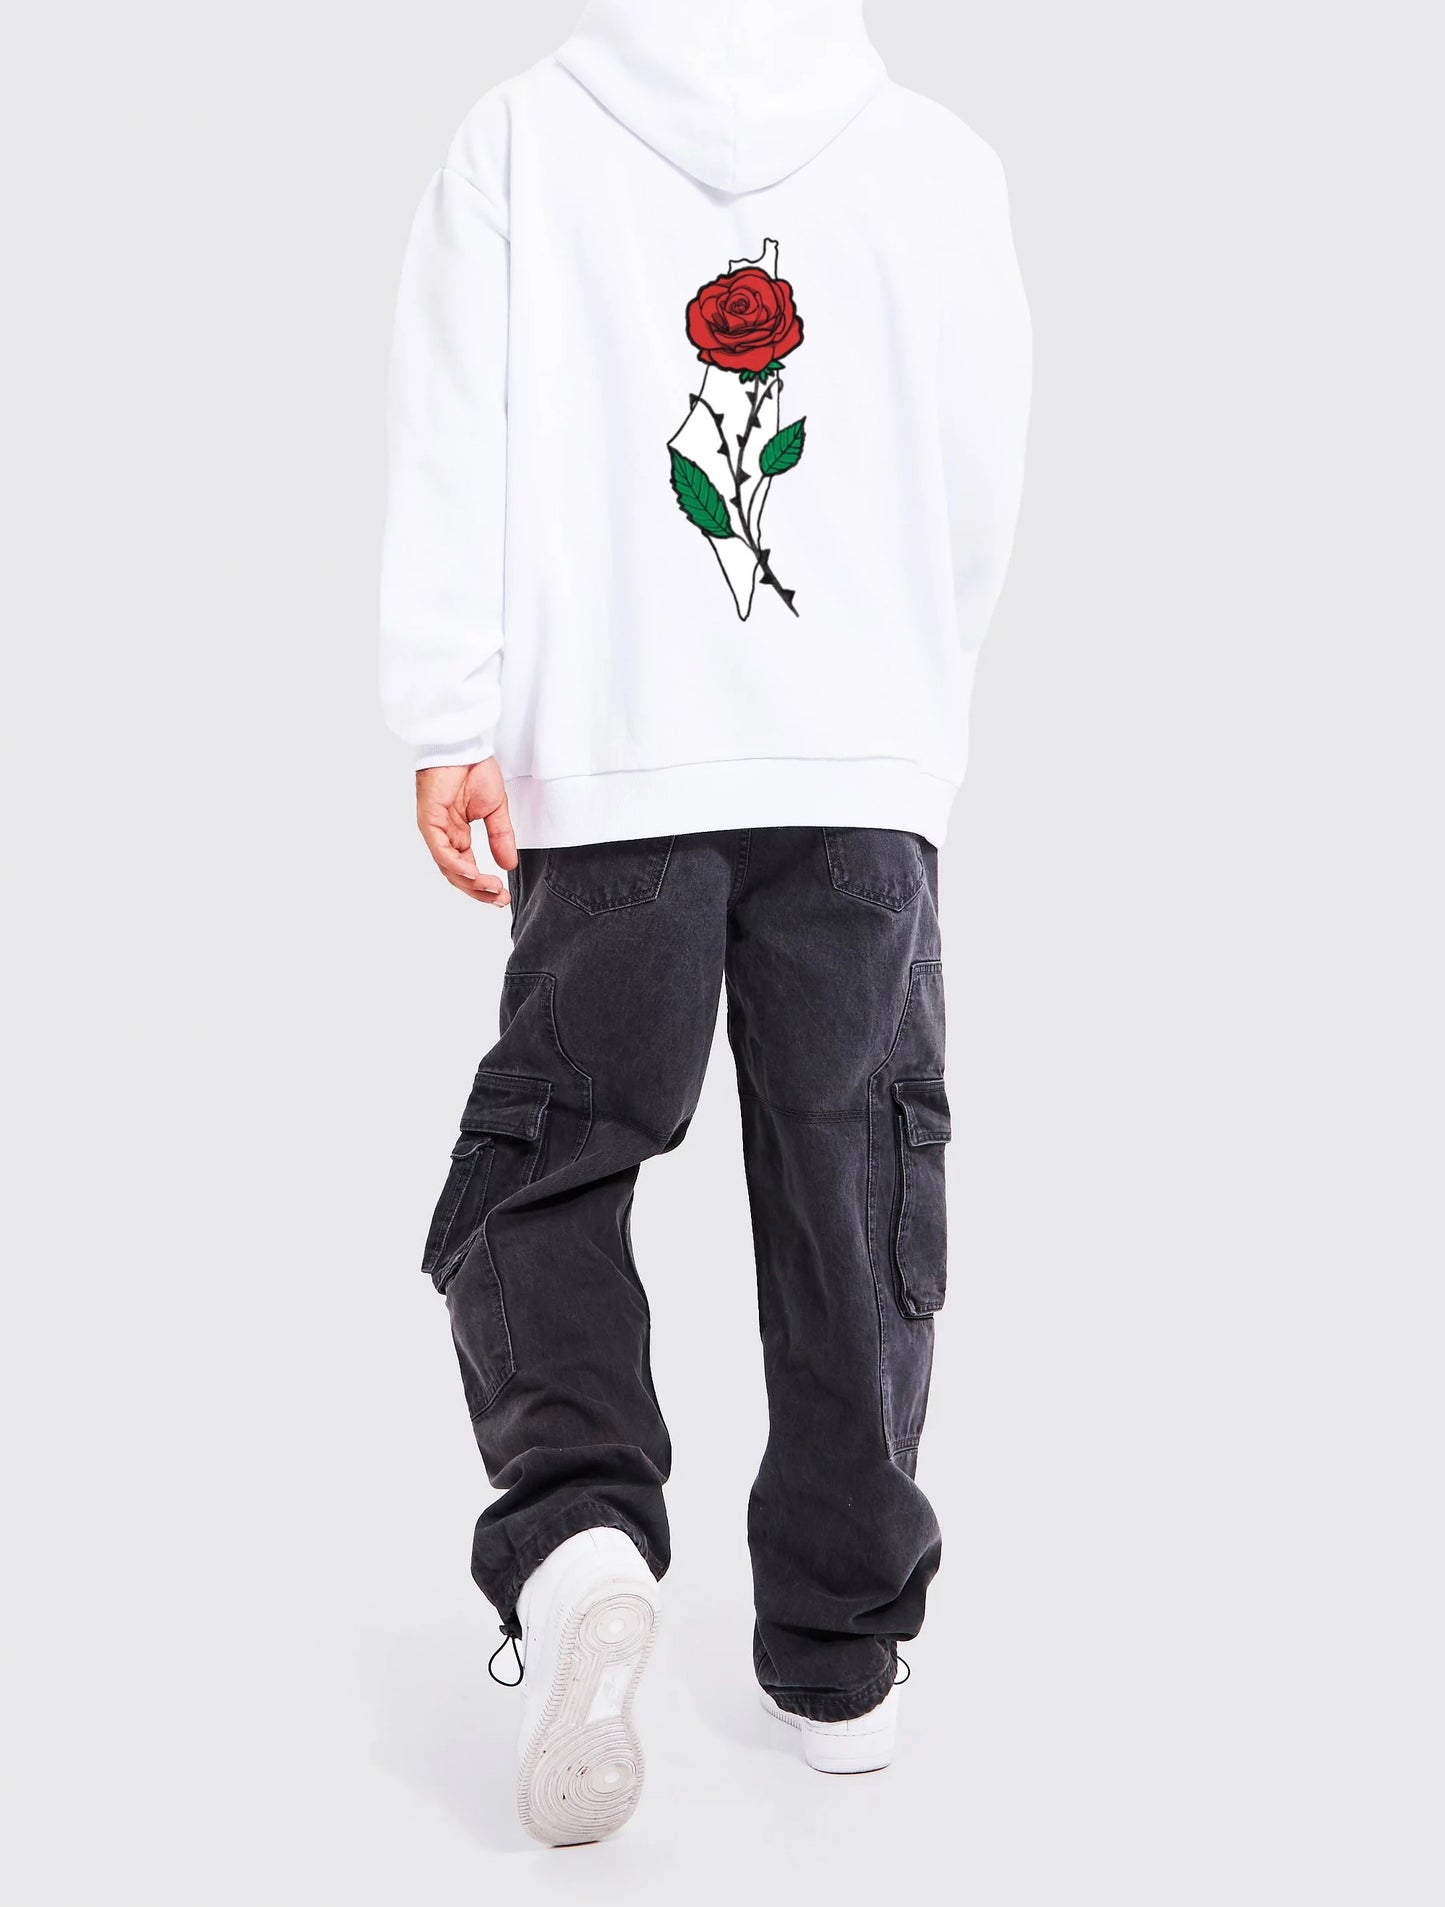 Palestine rose hoodie